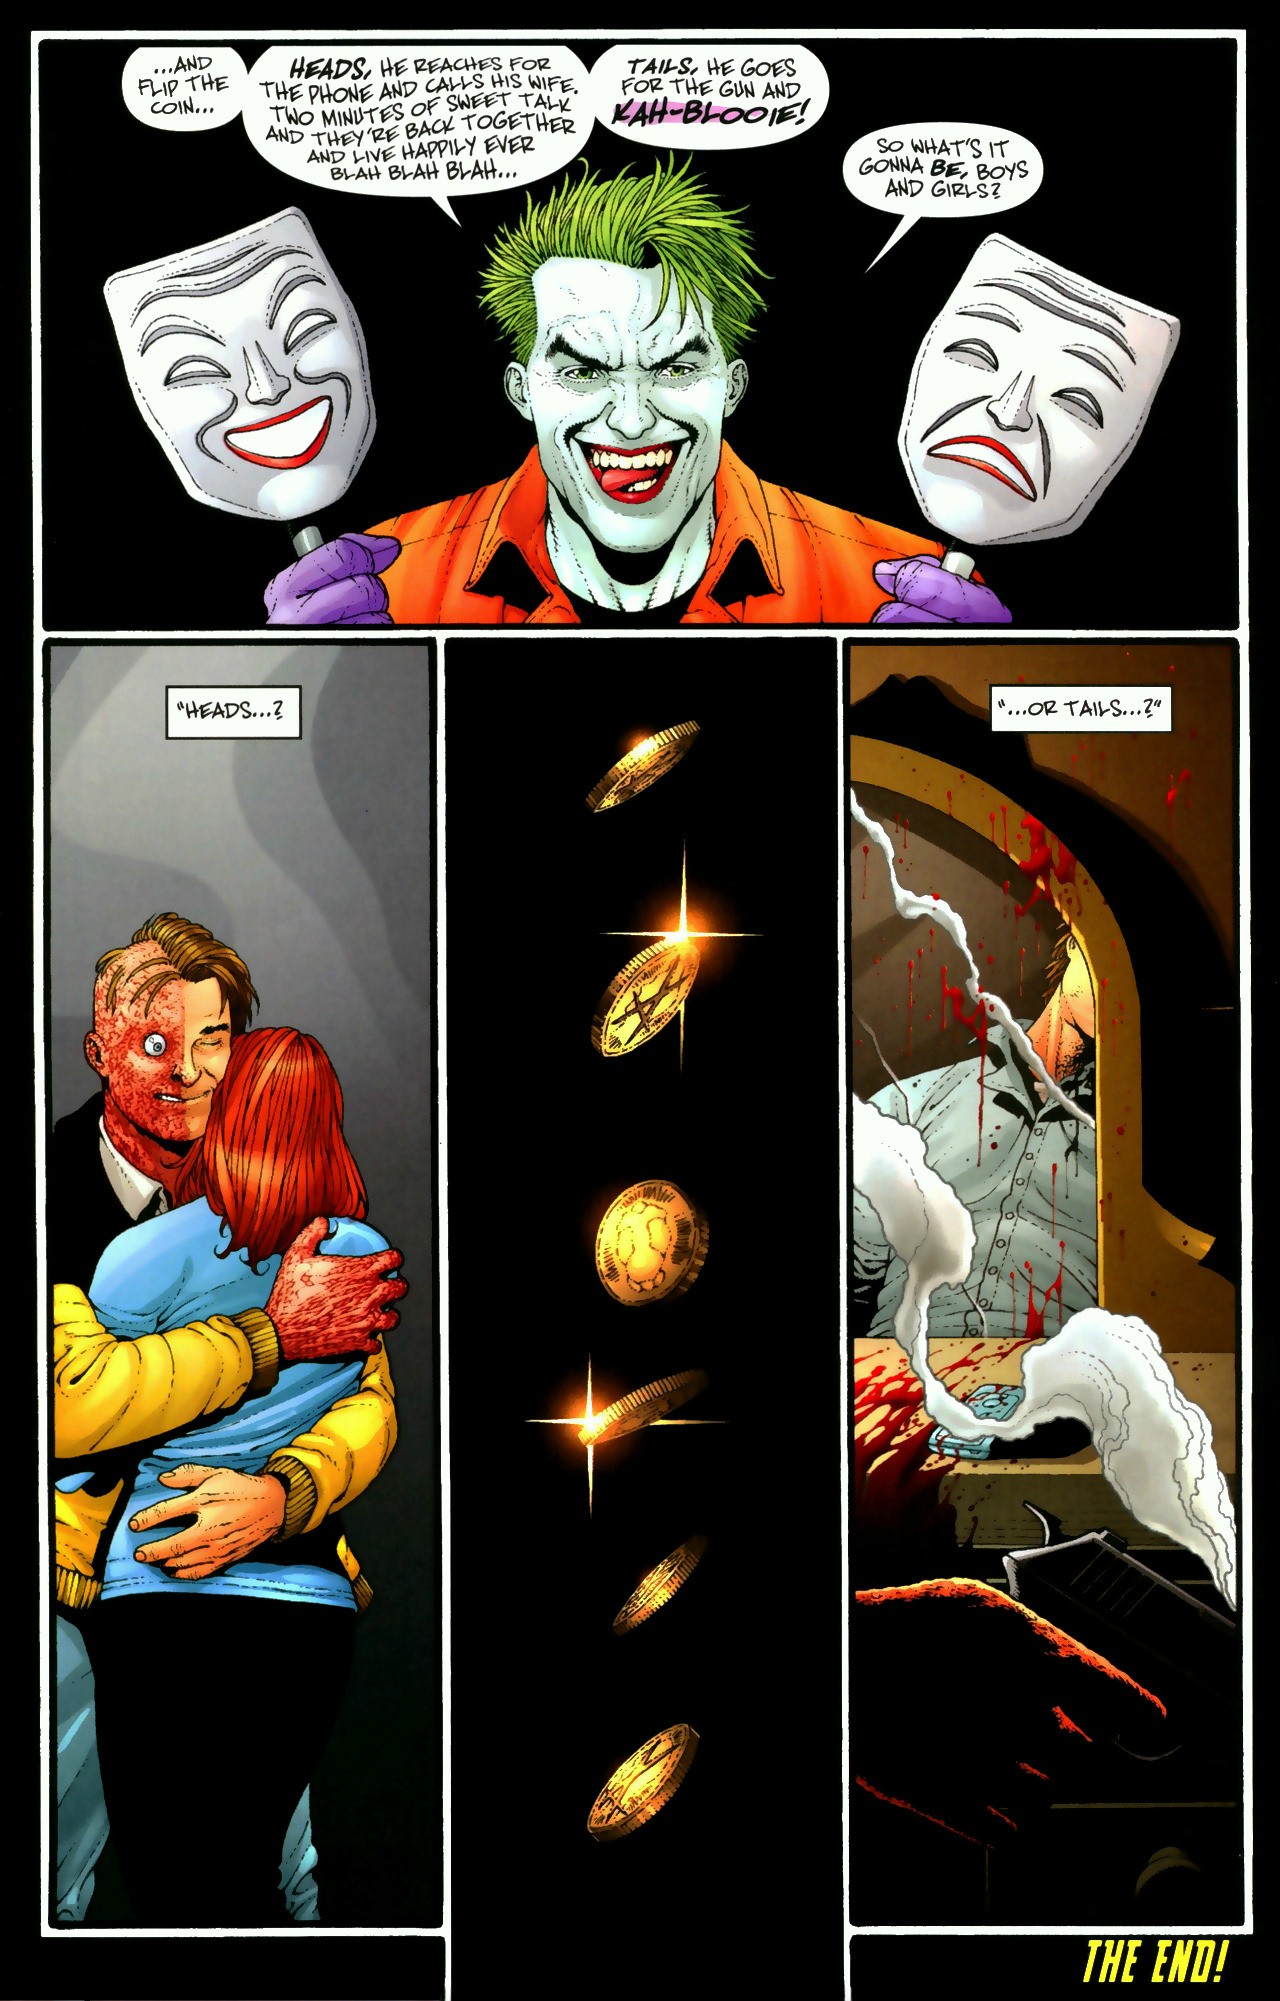 High Resolution Wallpaper | Joker's Asylum 1280x2001 px